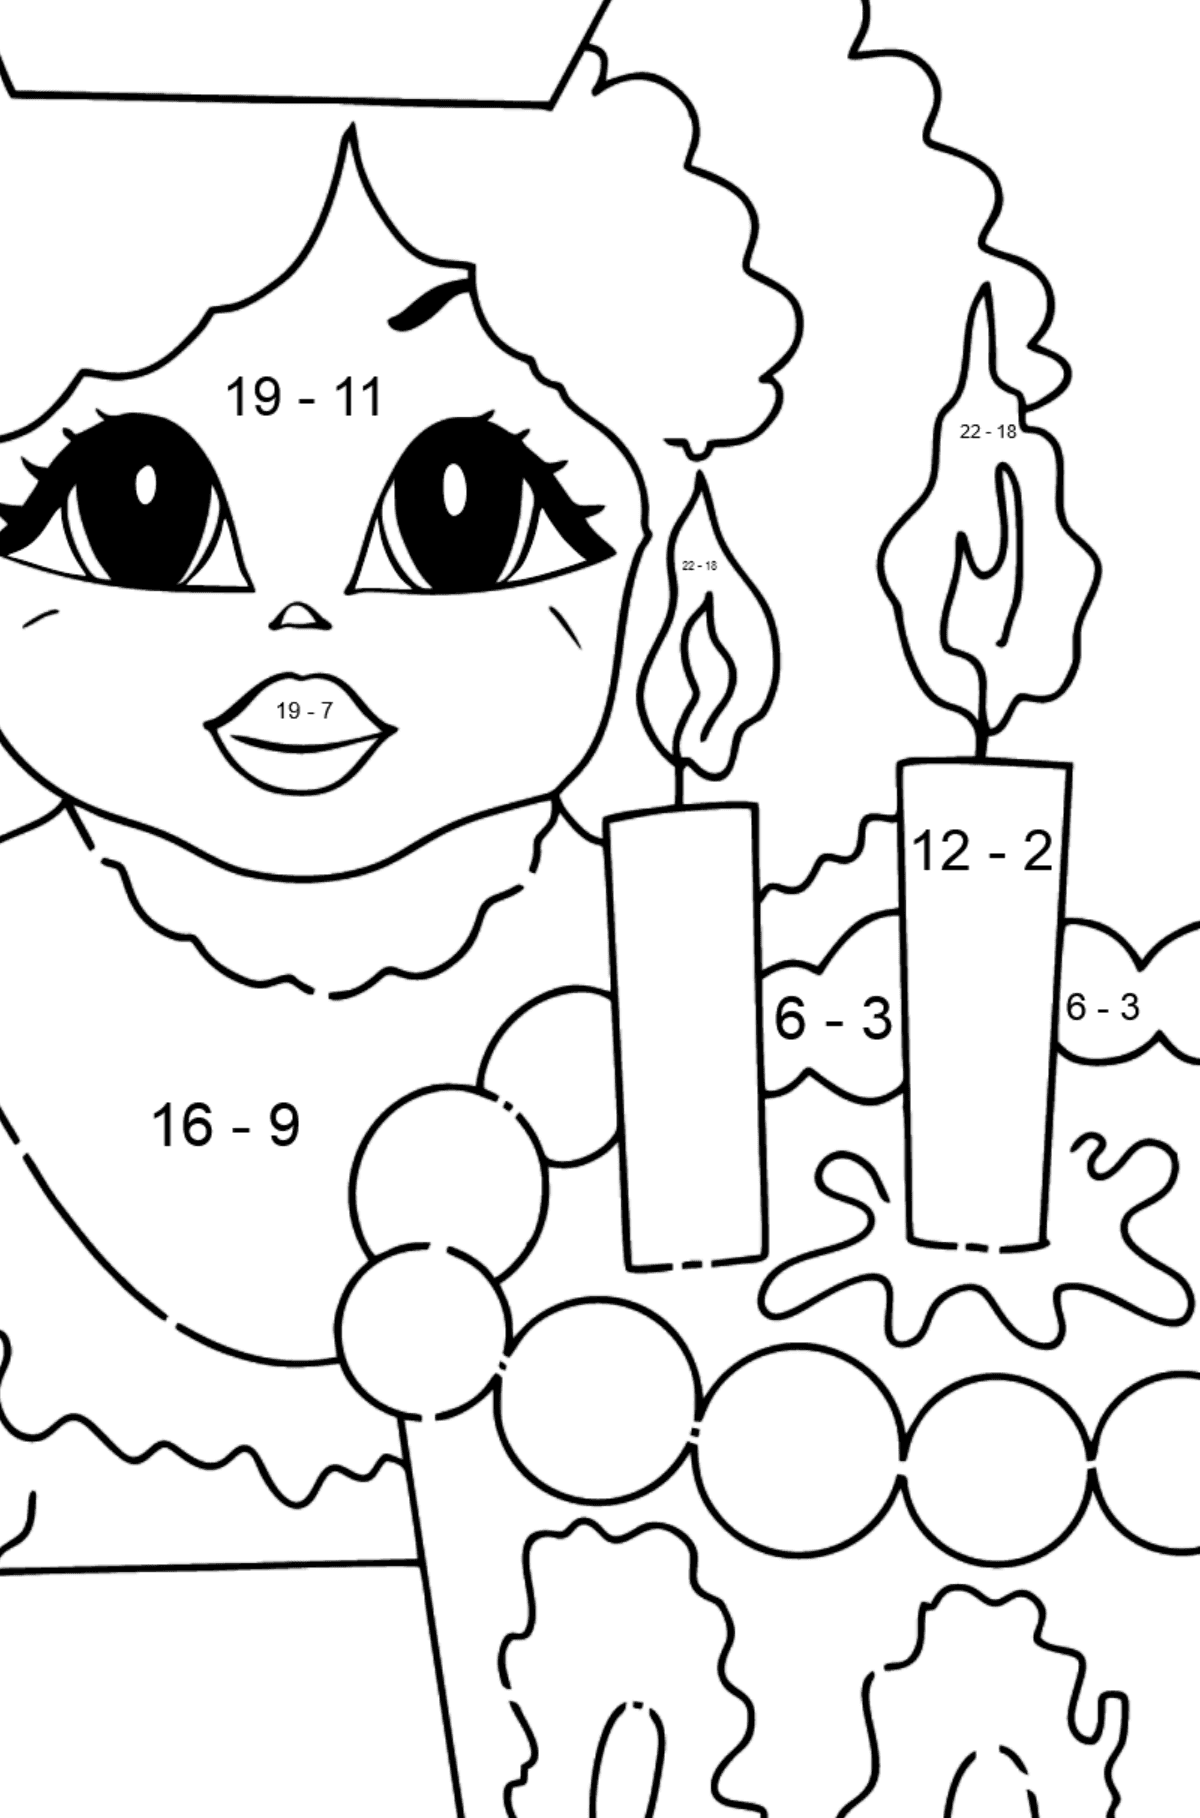 Principessa da colorare semplice e divertente - Colorazione matematica - Sottrazione per bambini